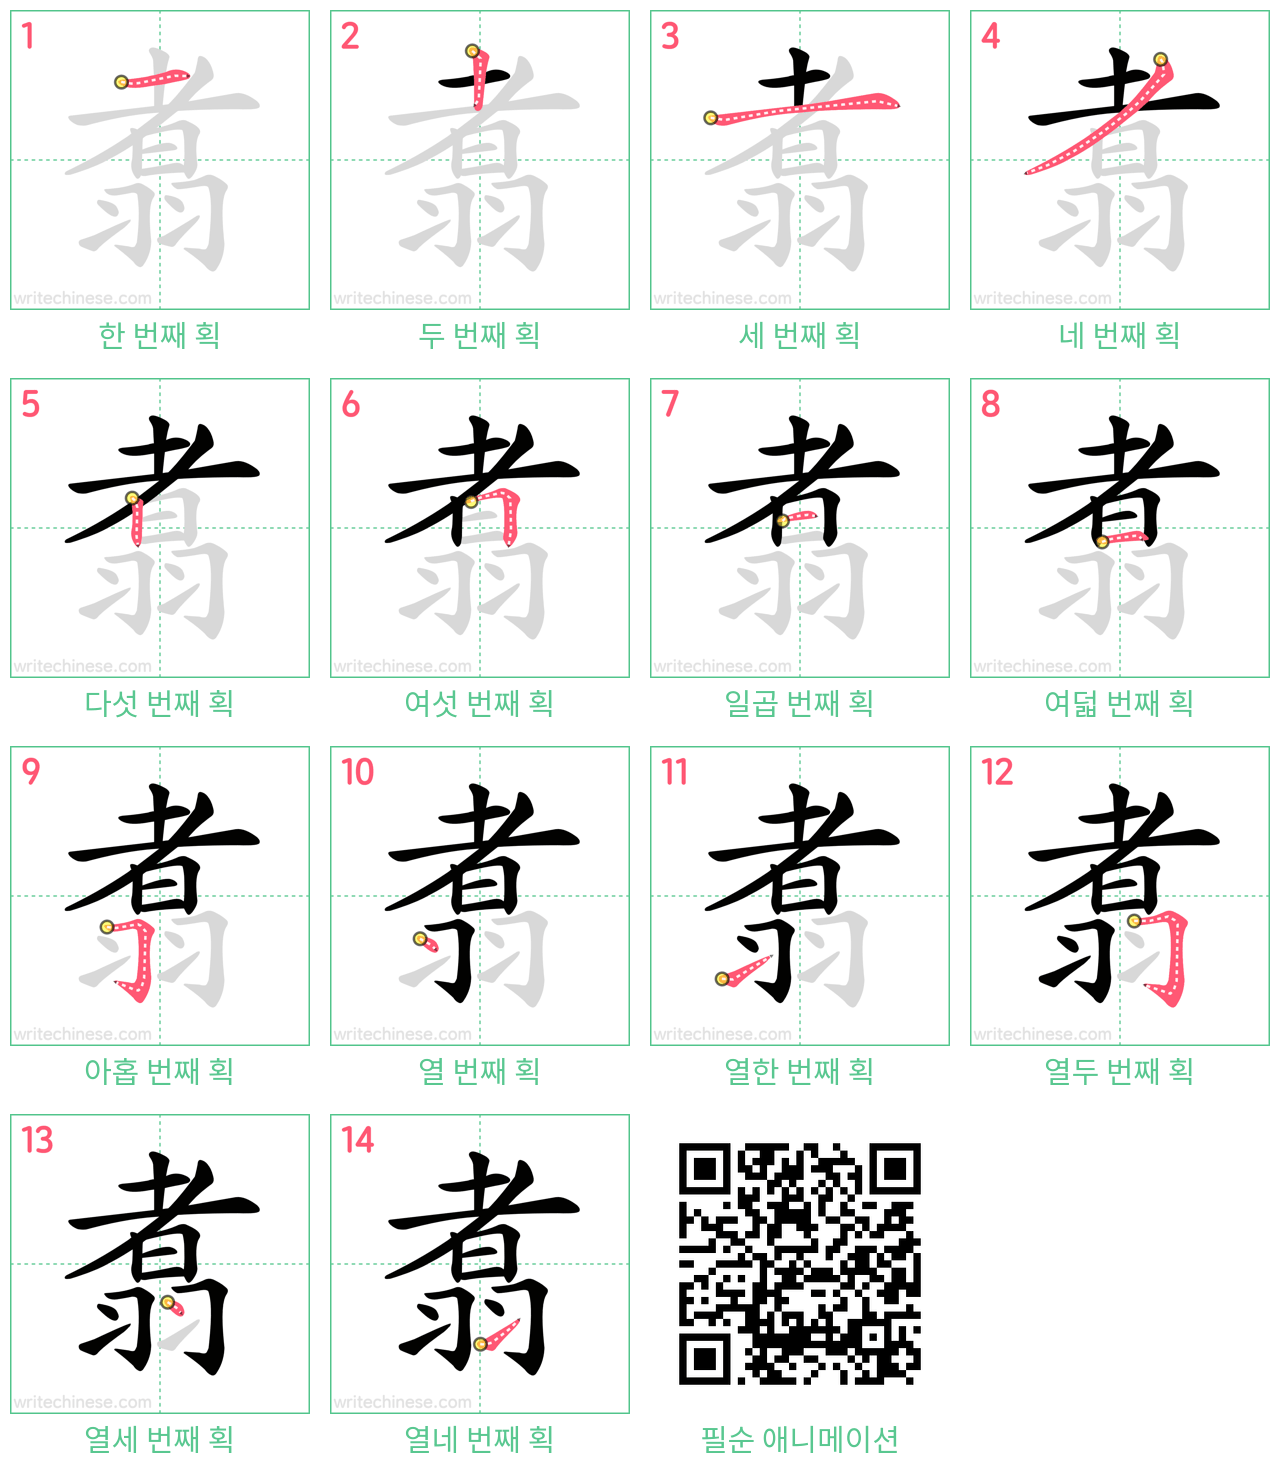 翥 step-by-step stroke order diagrams